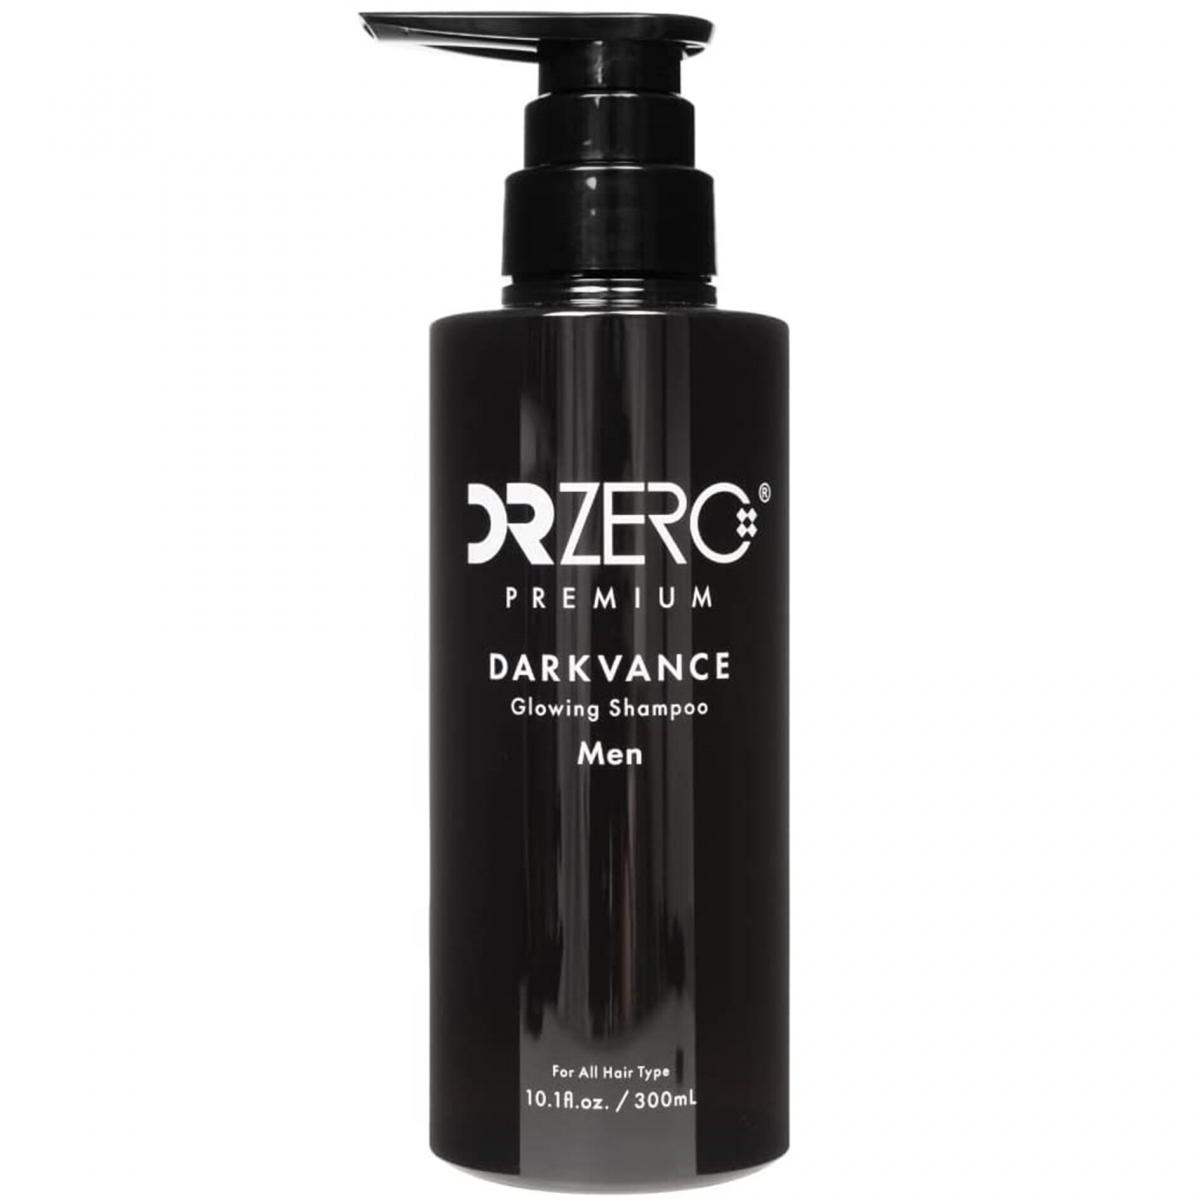 Premium Darkvance Glowing Shampoo (Men) 300ml - 90097 (Parallel Import)